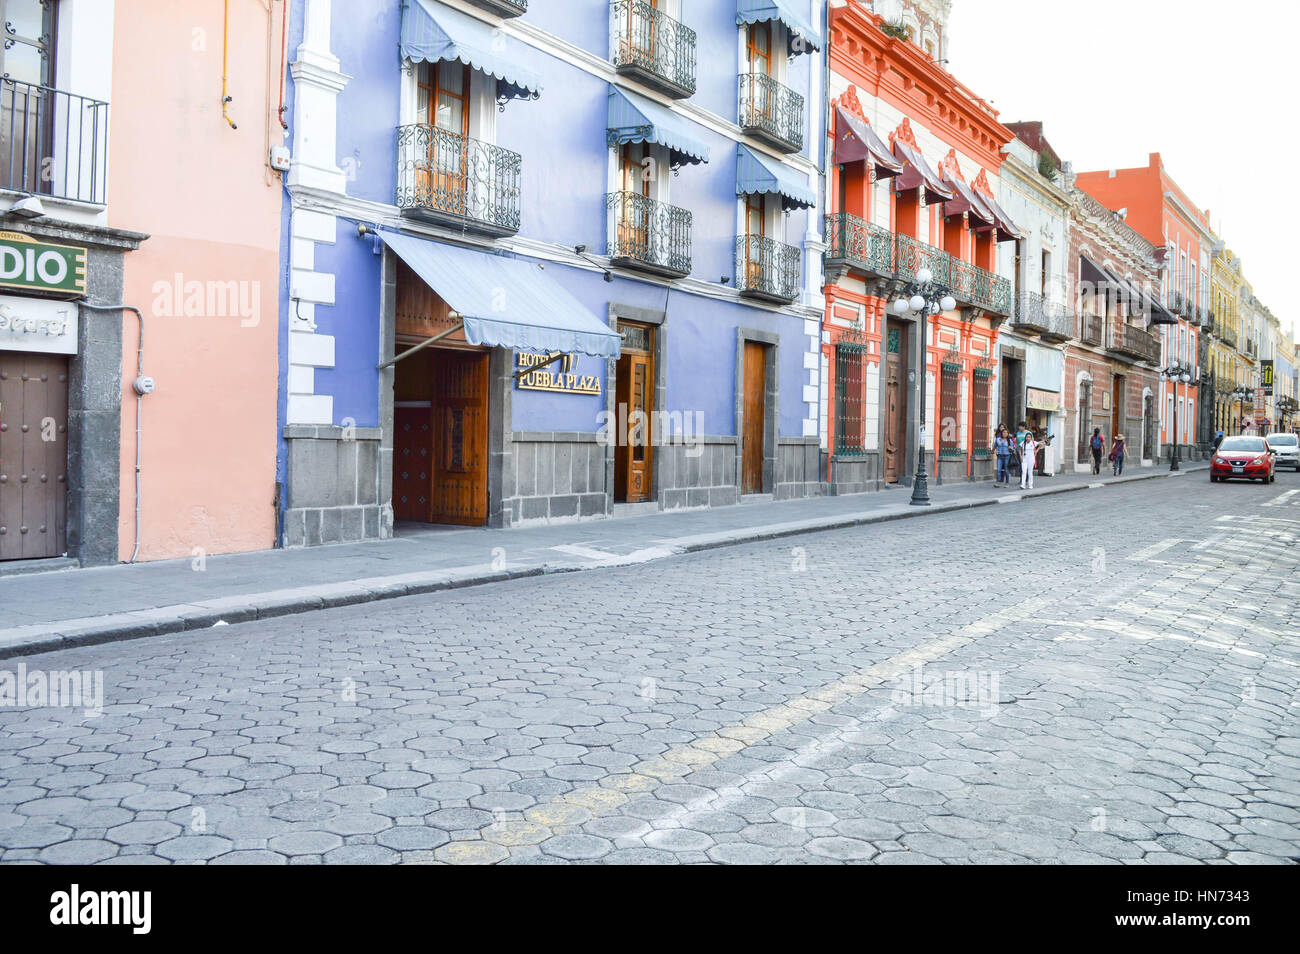 Puebla, México - Noviembre 7, 2014: la gente pasea por las calles de la hermosa ciudad colonial de Puebla en México Foto de stock